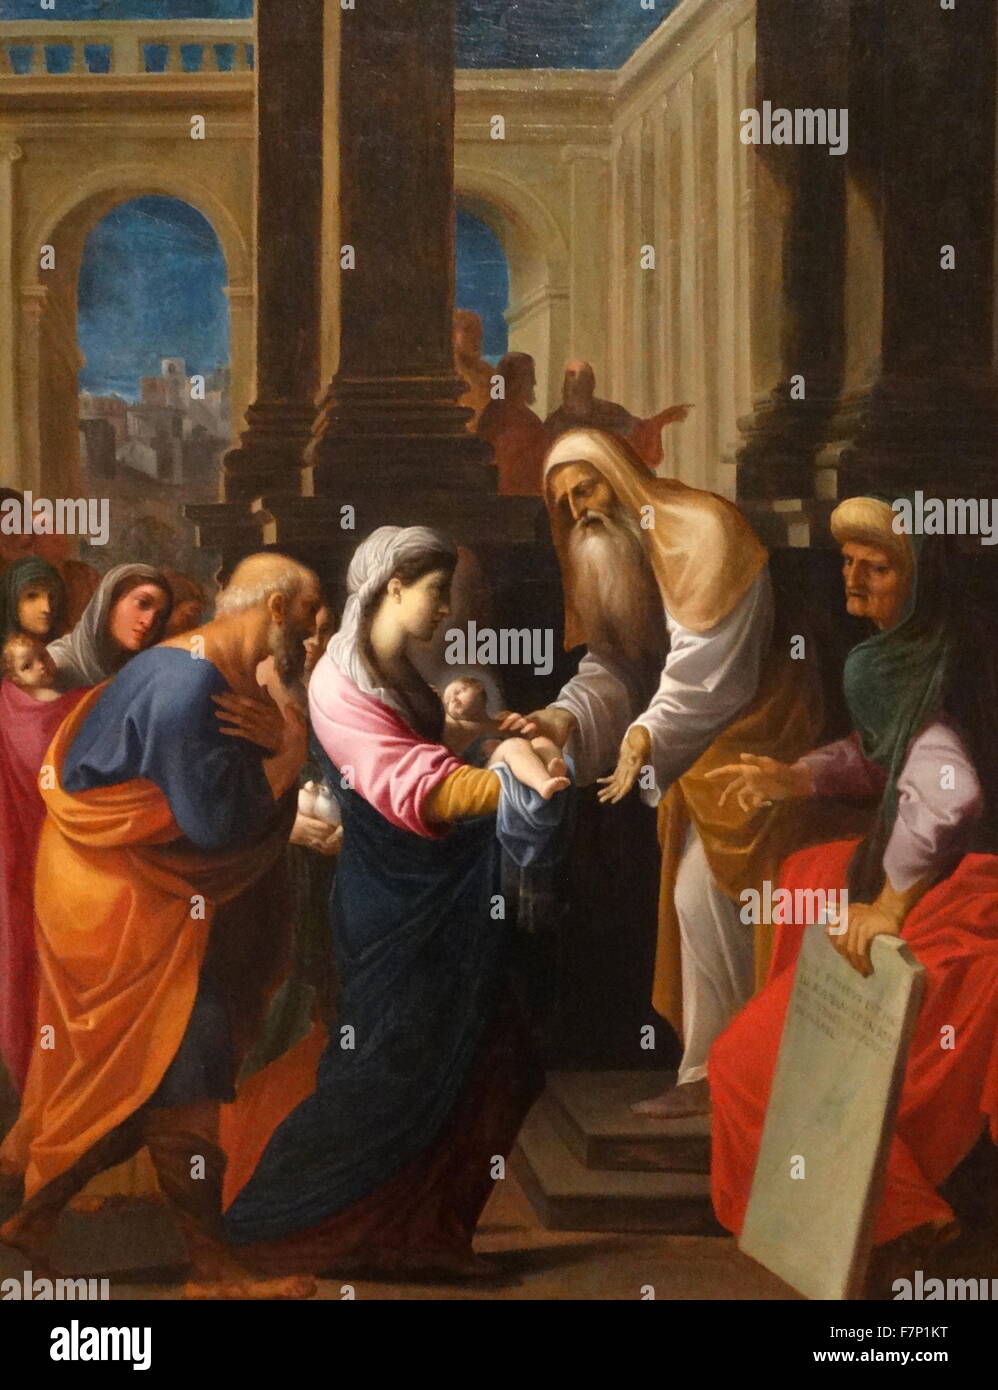 Gemälde mit dem Titel "Darstellung des Kindes im Tempel" von Ludovico Carracci (1555-1619) Italienisch, Frühbarock Maler, Radierer und Grafiker in Bologna geboren. Vom 17. Jahrhundert Stockfoto